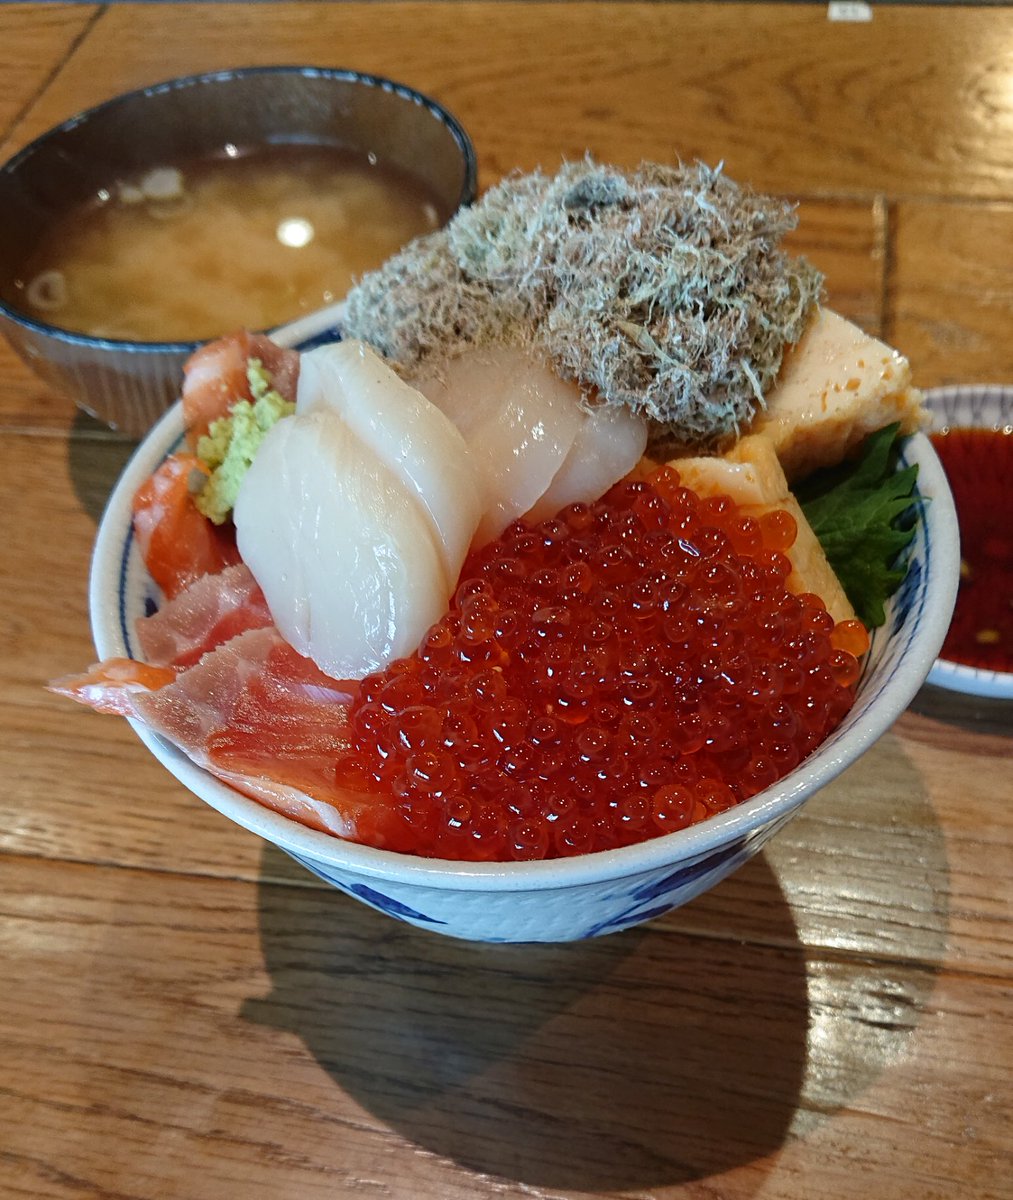 #大宮市場 #いさば寿司 
いつもはマグロ丼なのですが 
#北海丼 提供してました🍚✨
ホタテが甘い♪ ネタ良し👍